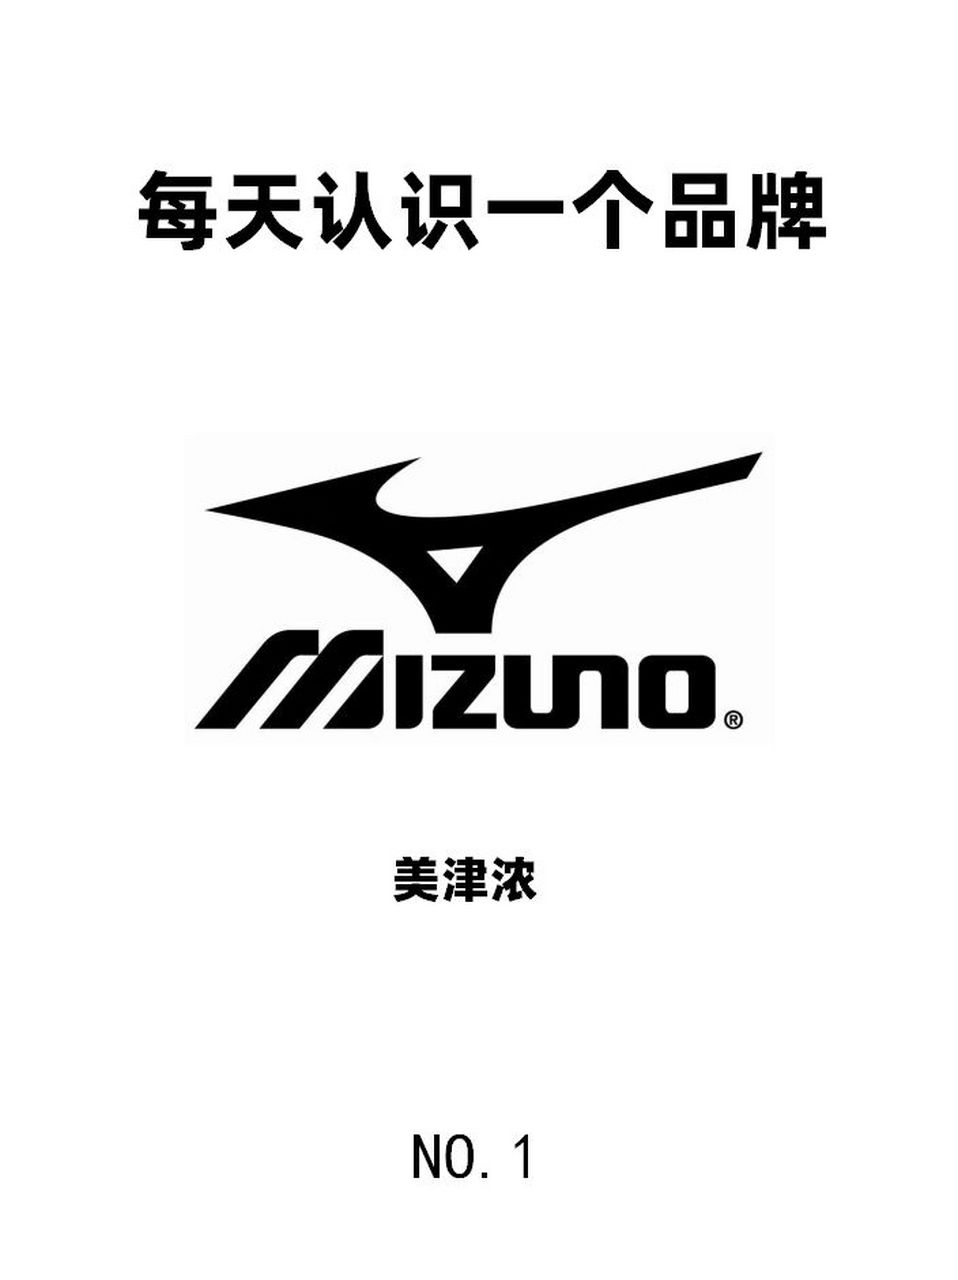 关于mizuno美津浓 日本品牌,是日本美津浓株式会社于1906年创立的运动